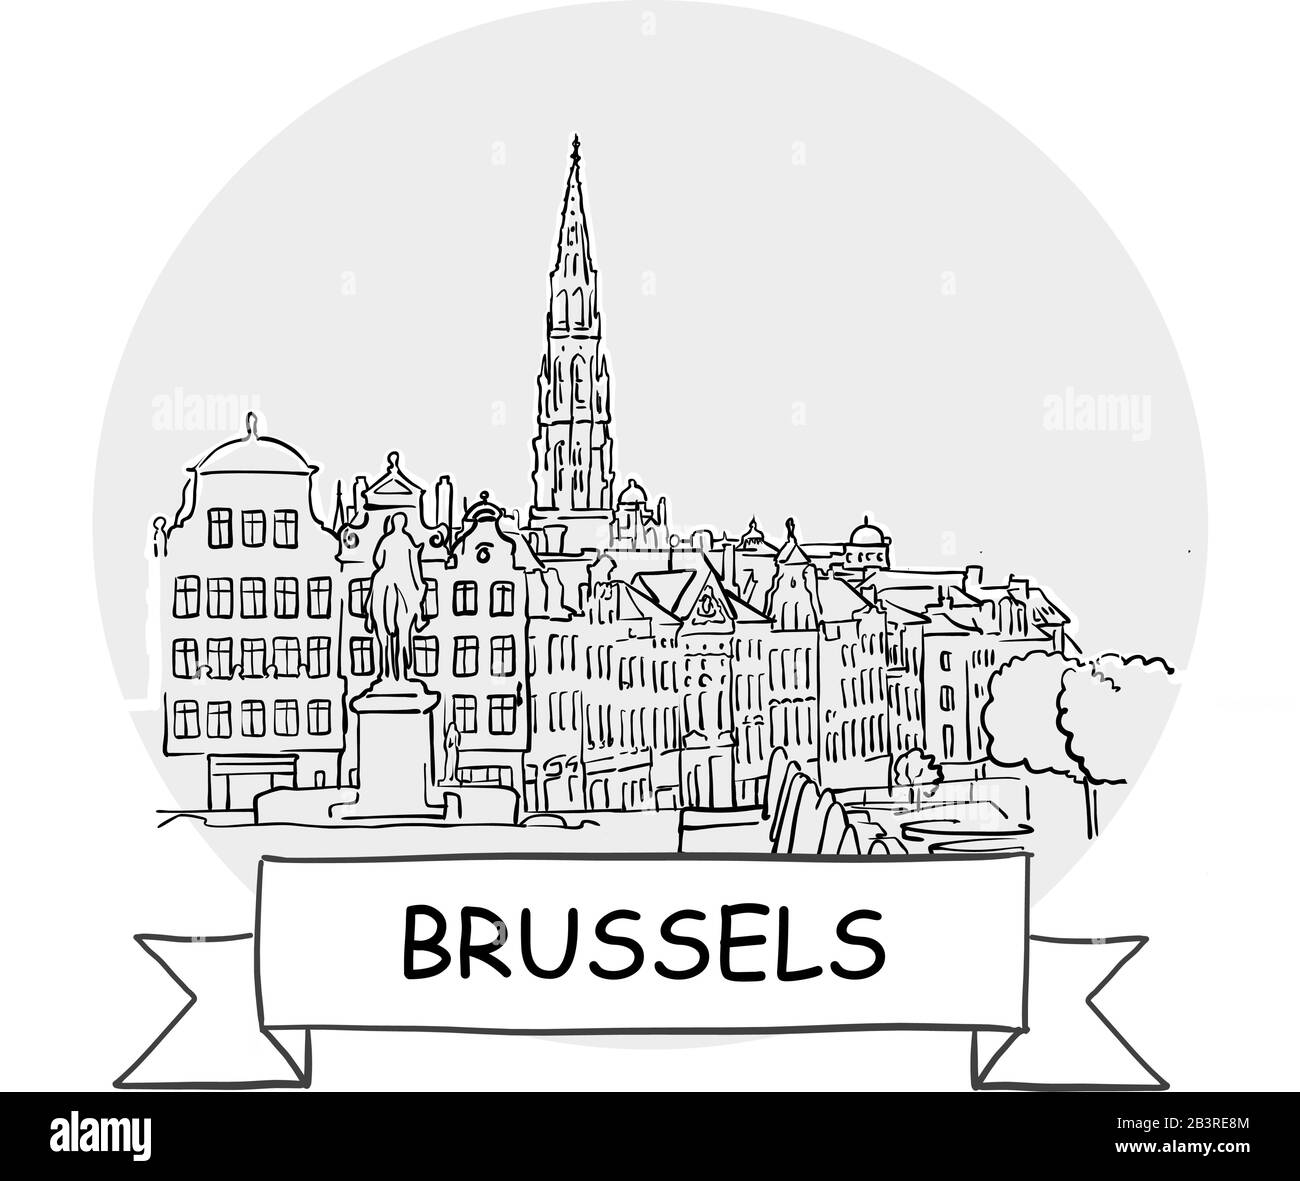 Cartel De Vectores Urbanos Dibujado A Mano Por Bruselas. Ilustración De Línea Negra Con Cinta Y Título. Ilustración del Vector